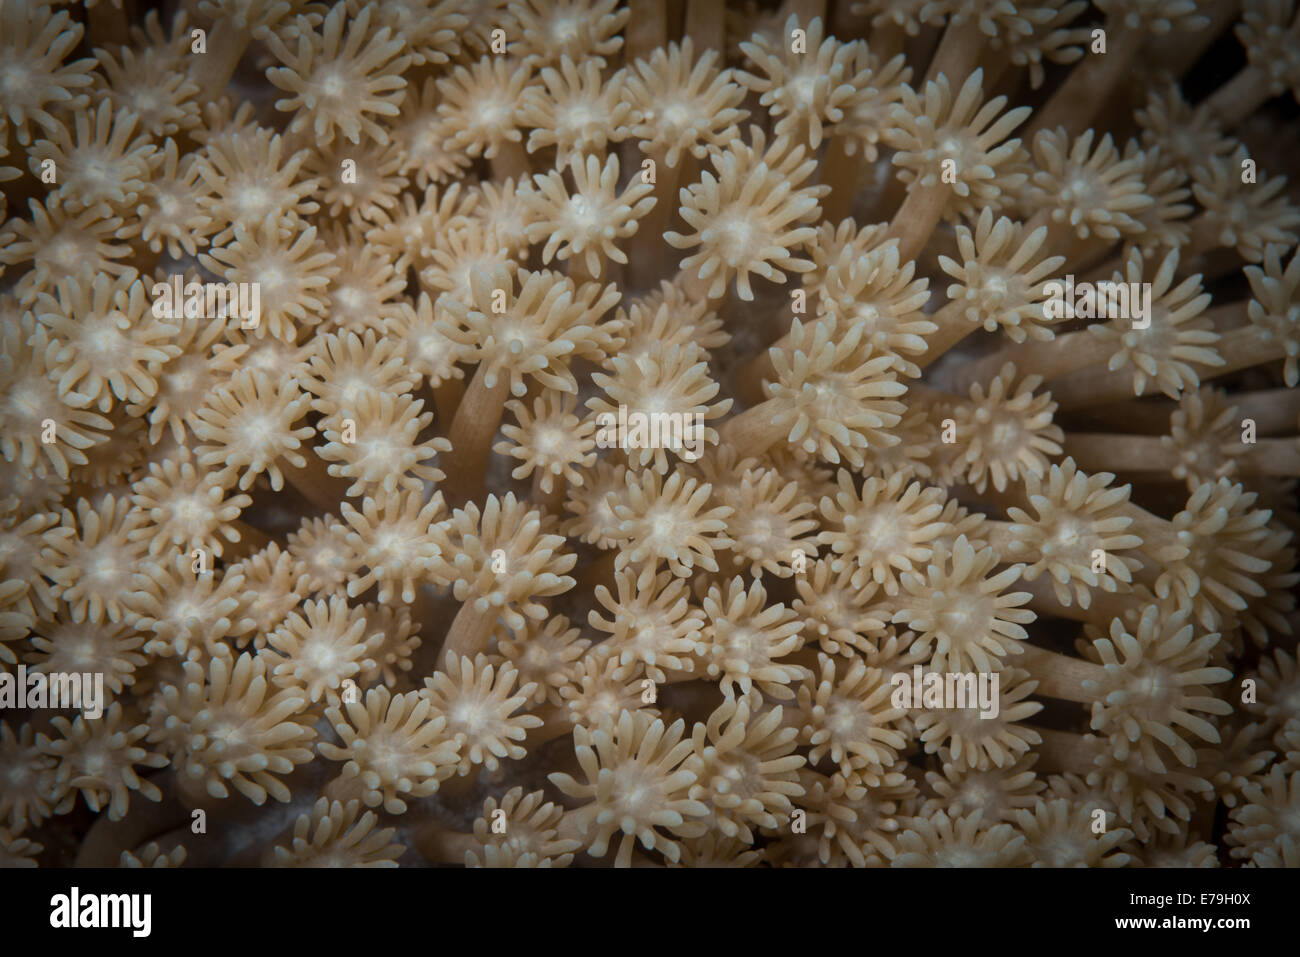 Alimentazione polipi Octocoral simile a fiori in Mar Rosso, Egitto Foto Stock